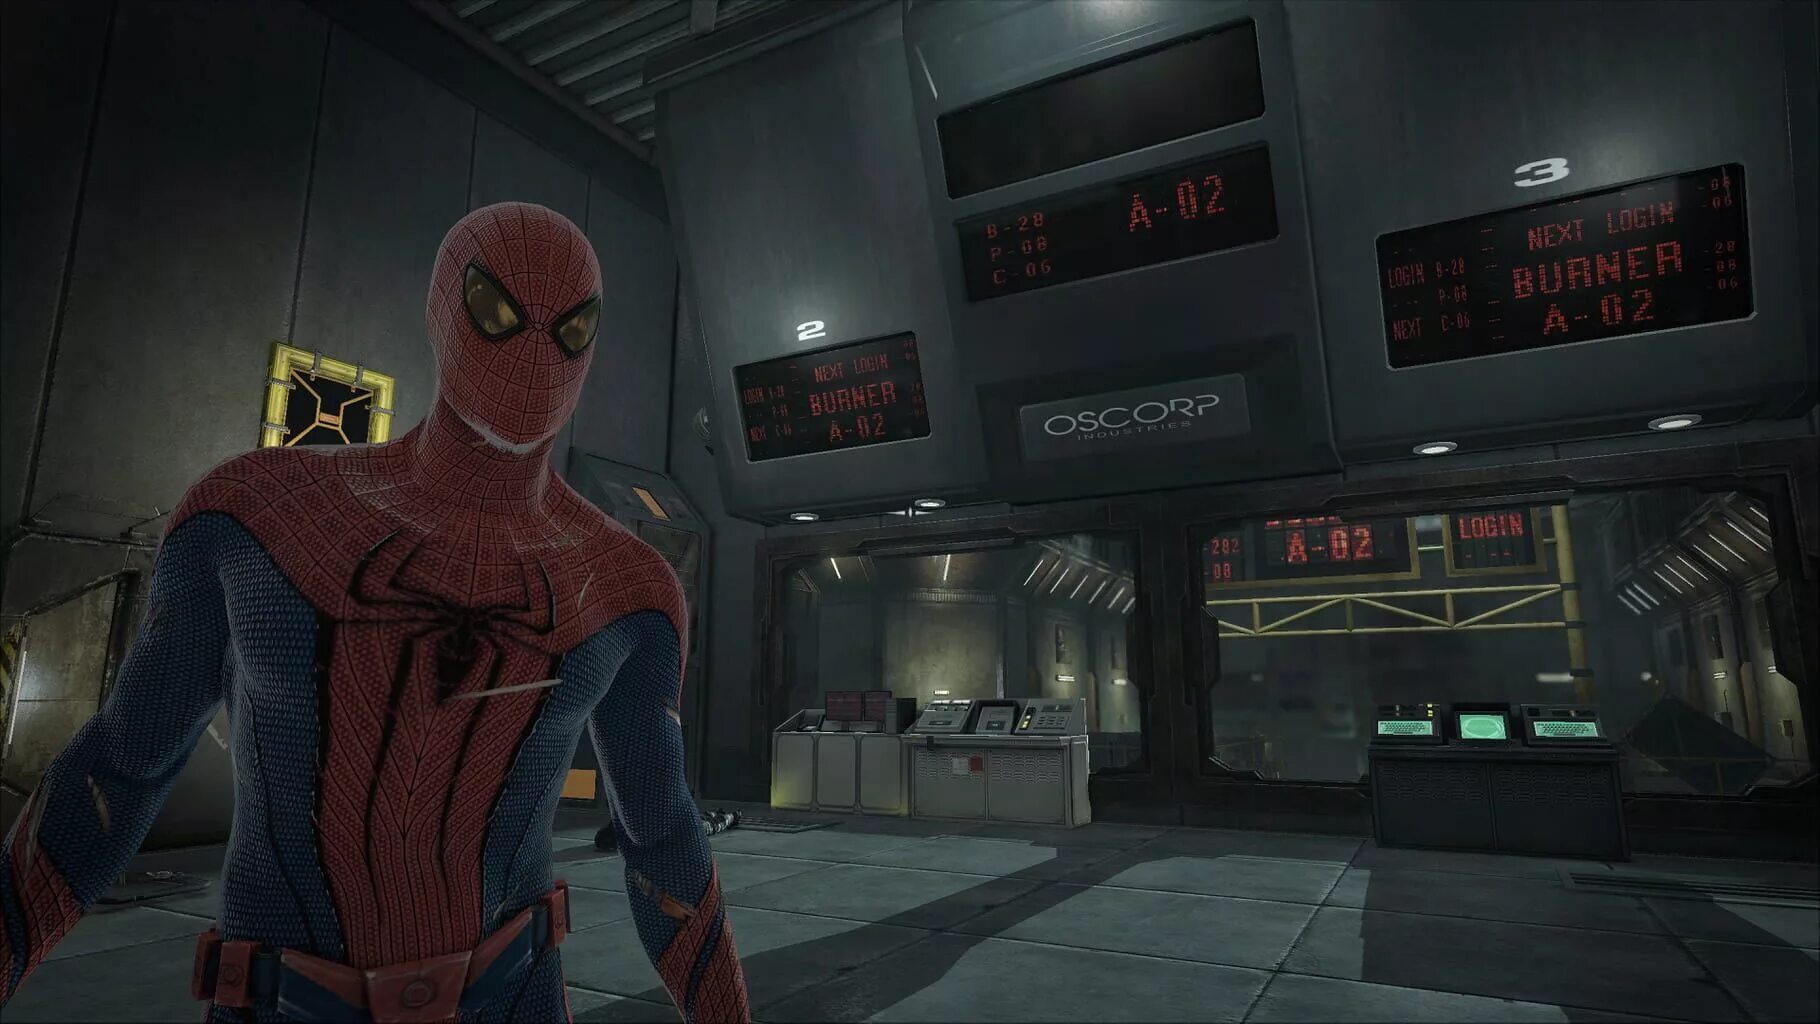 Spider man игра 2012. The amazing Spider-man игра. Человек паук игра 2012. Новый человек паук игра 2012. The amazing Spider-man (игра, 2015).